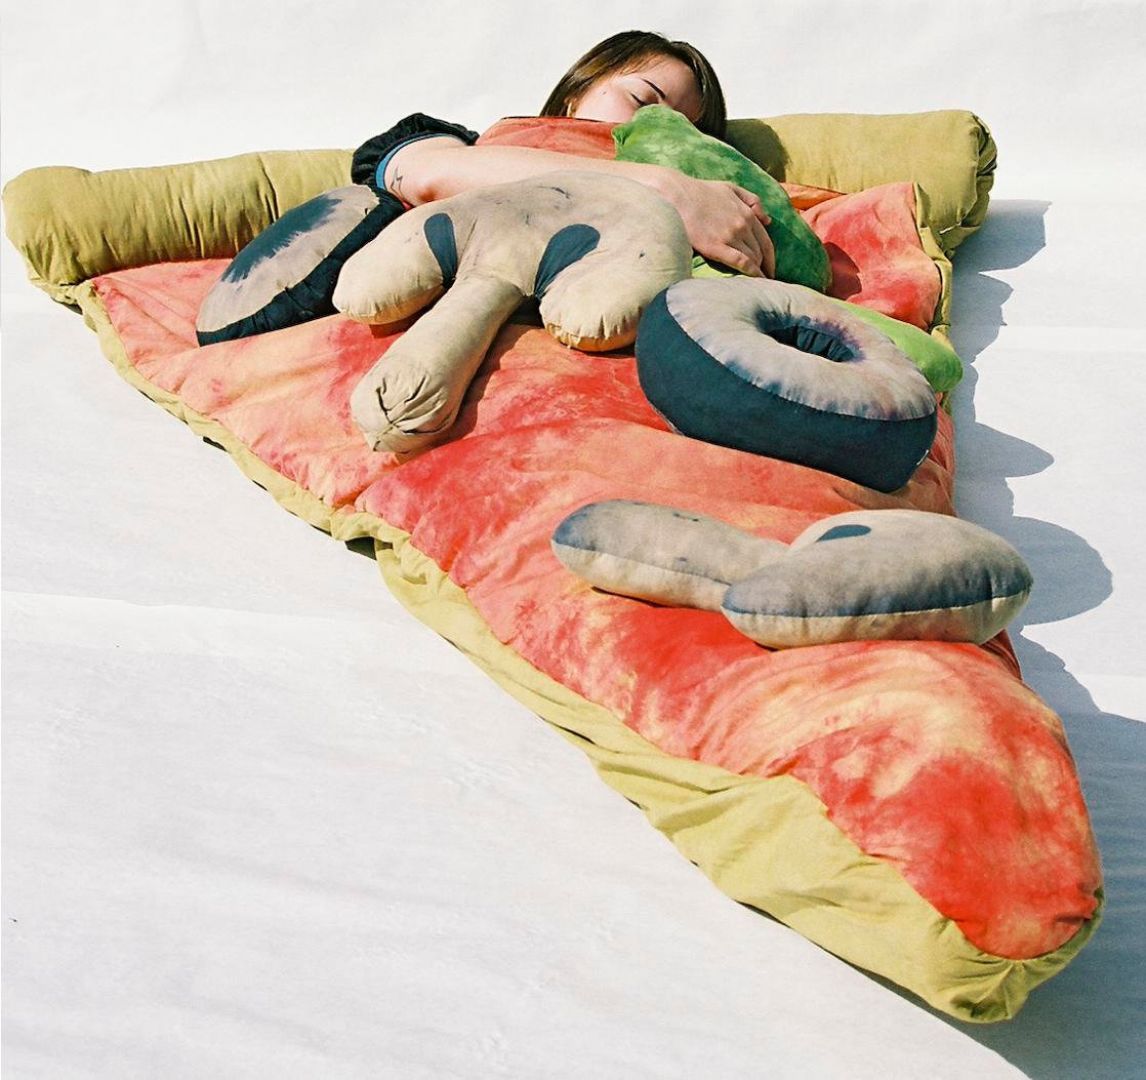 Śpiwór w kształcie pizzy, wykonany z ręcznie barwionej bawełny i wyłożony czerwonym atłasem. 
Fot. Theawesomer